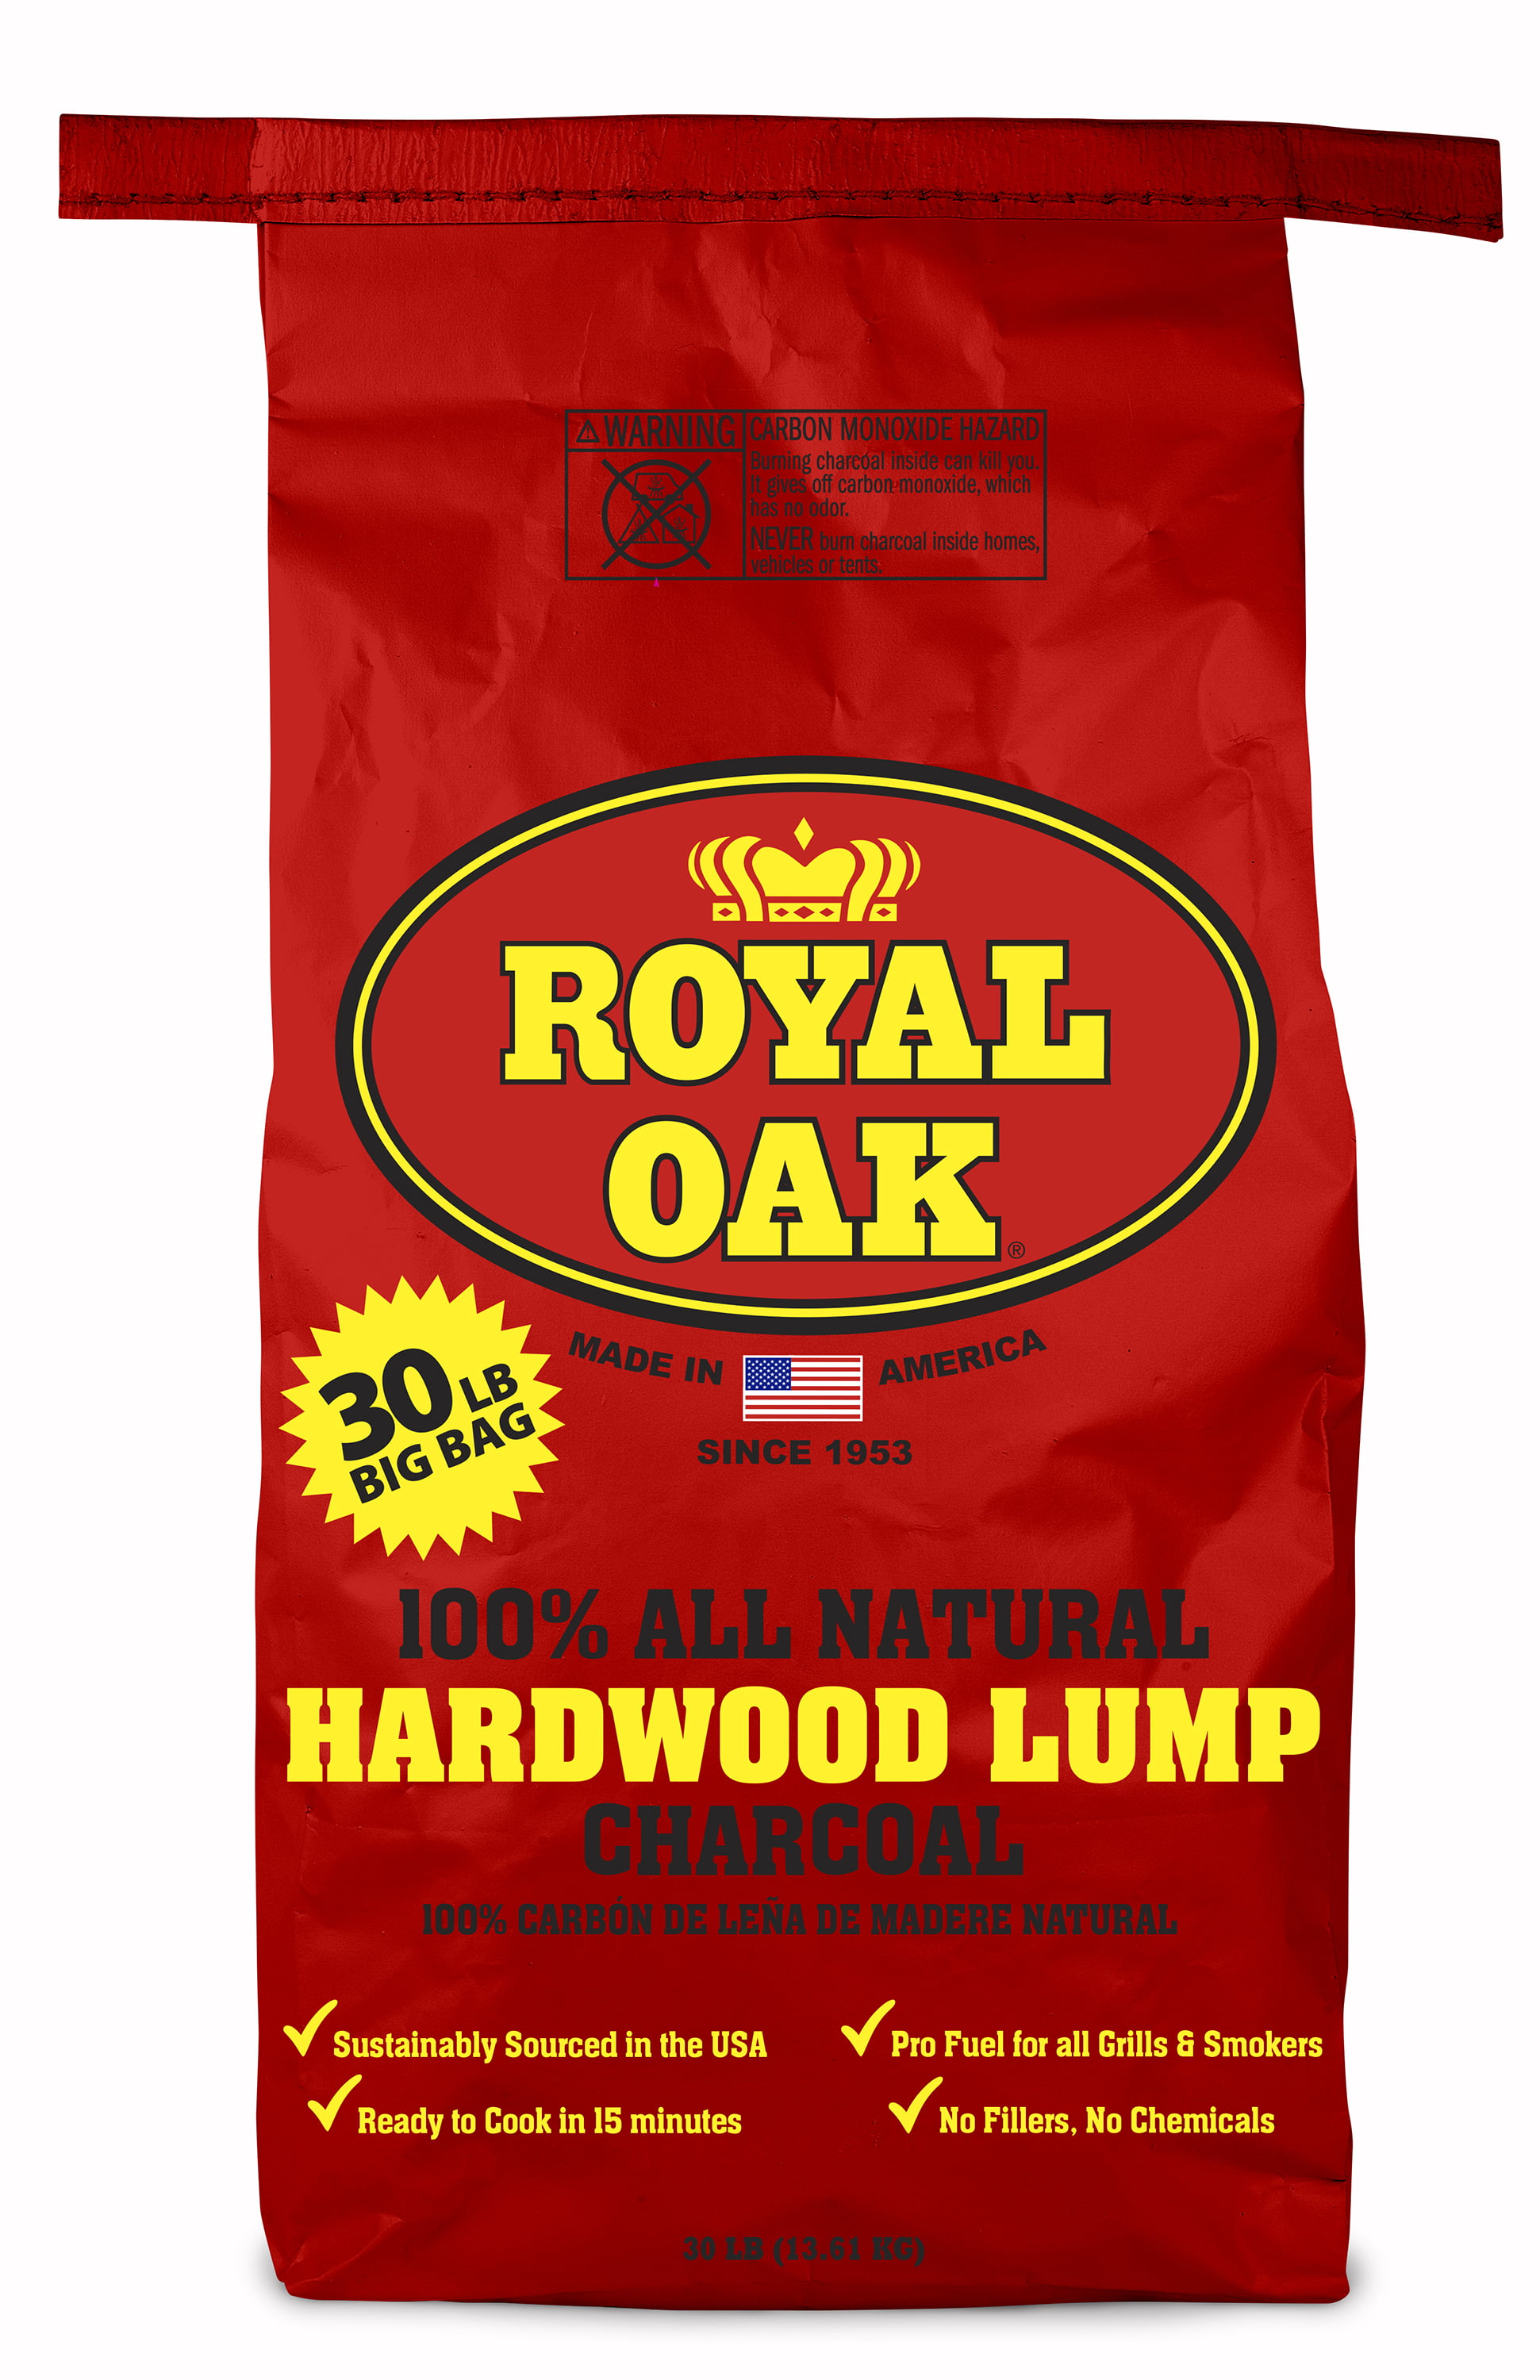 Royal Oak Lump Charcoal, All Natural Hardwood Charcoal, 30 Lbs - Walmart.com - Walmart.com